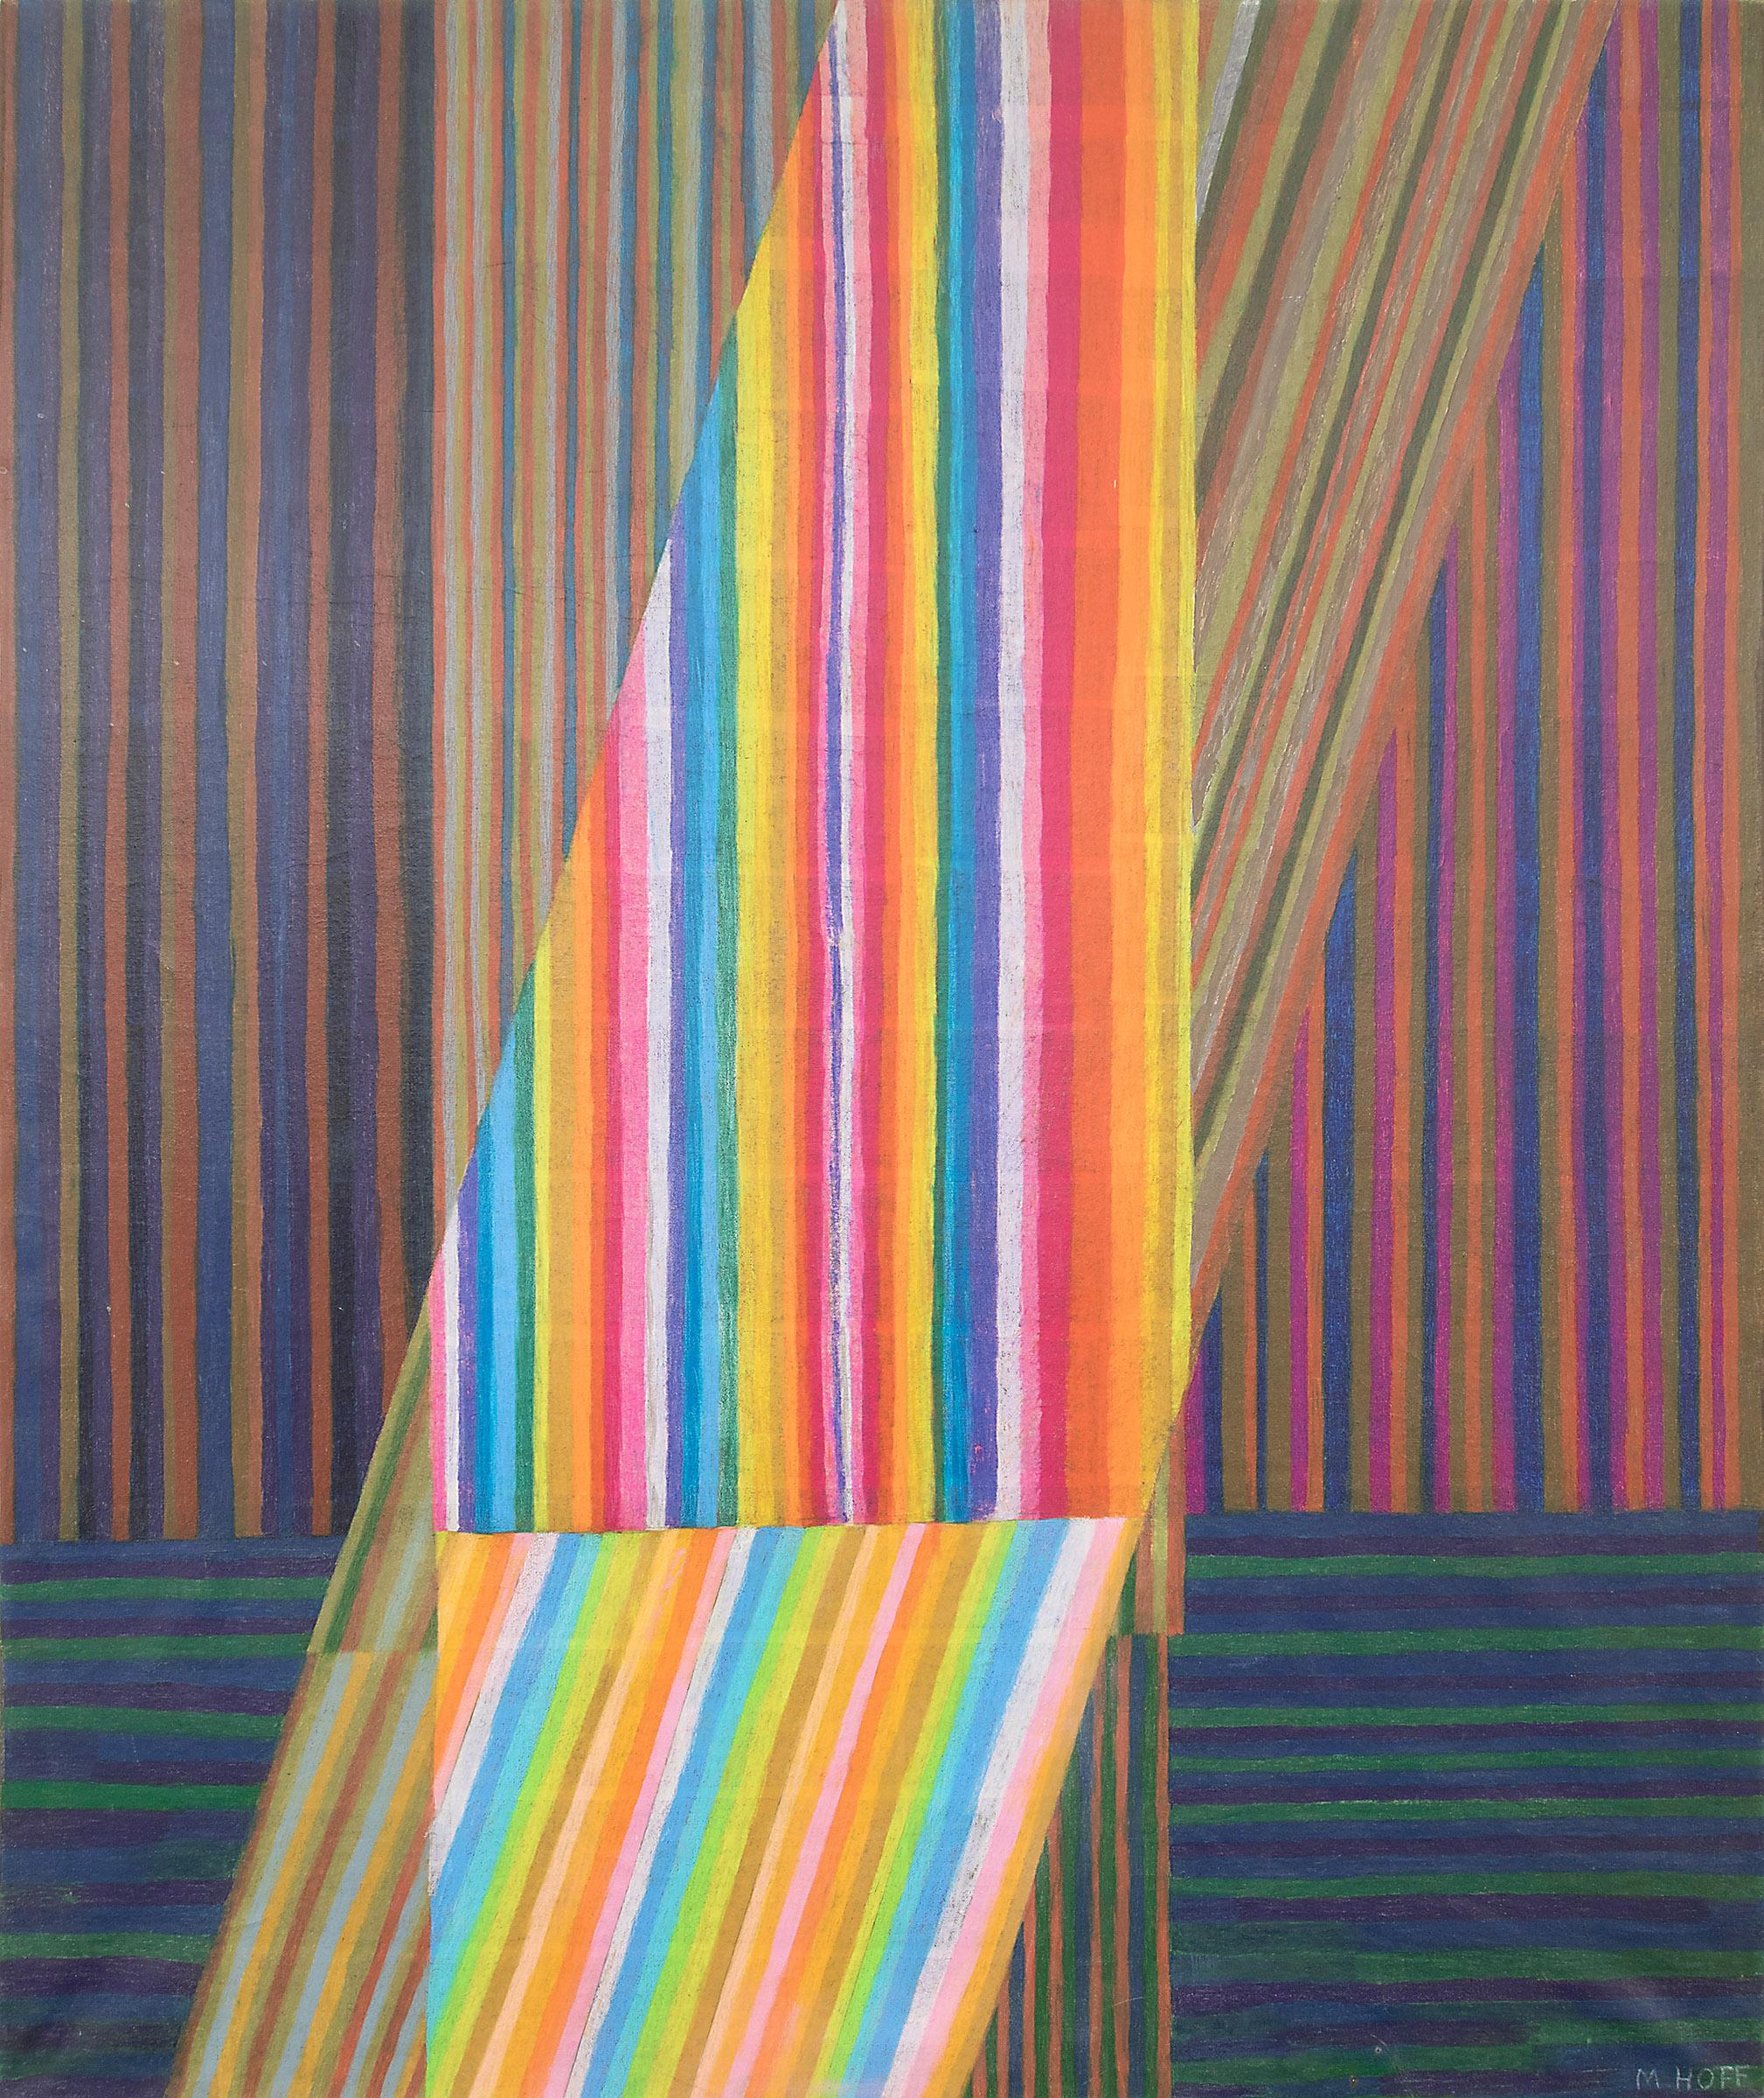 River arc-en-ciel, peinture abstraite à l'huile et au pastel, grande échelle verticale, années 1970